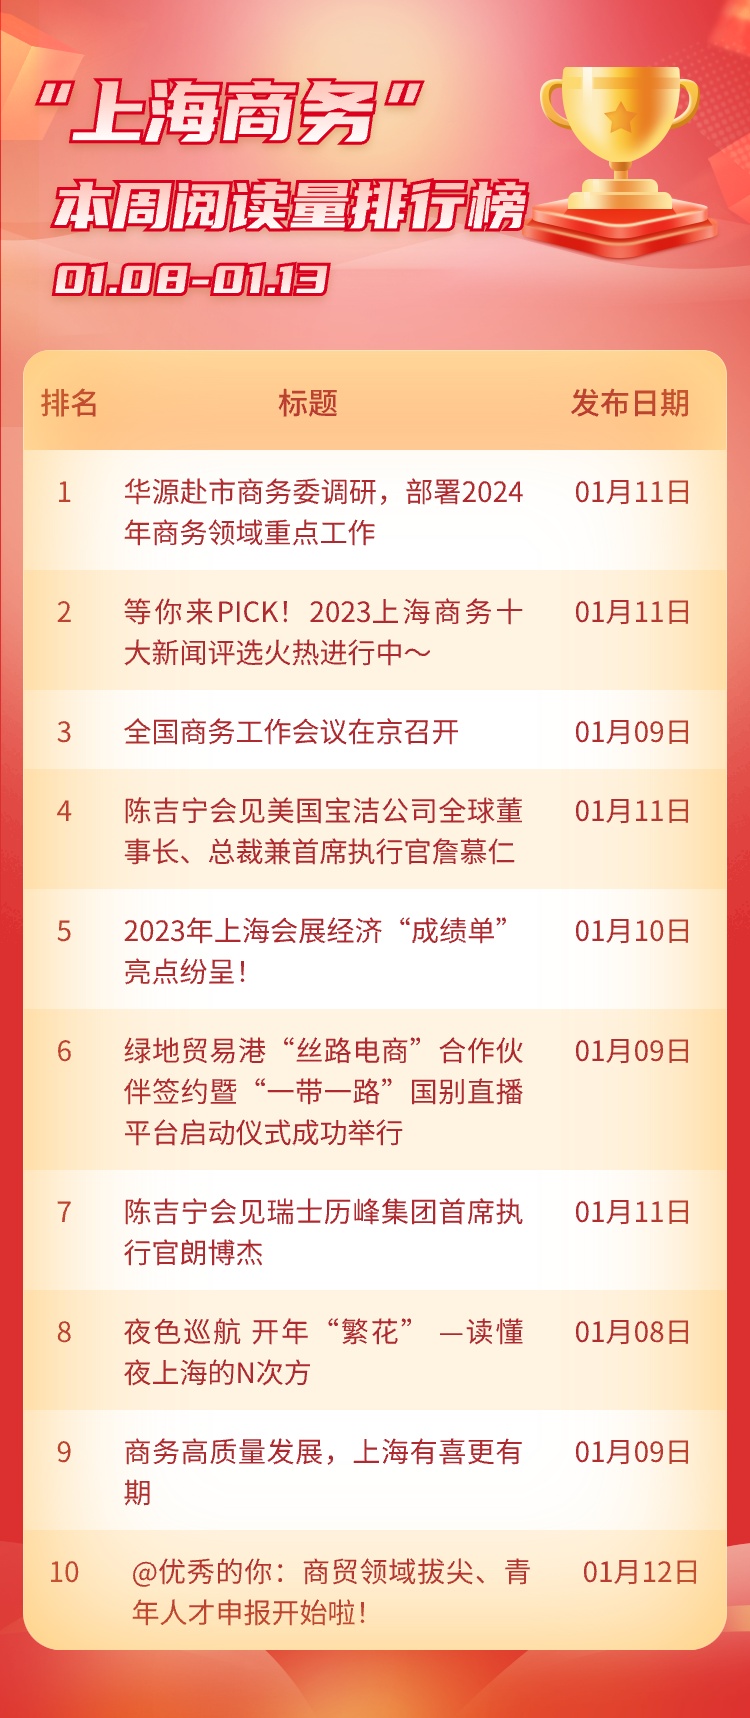 上海商务新闻盘点第20期:一起来看本周热点